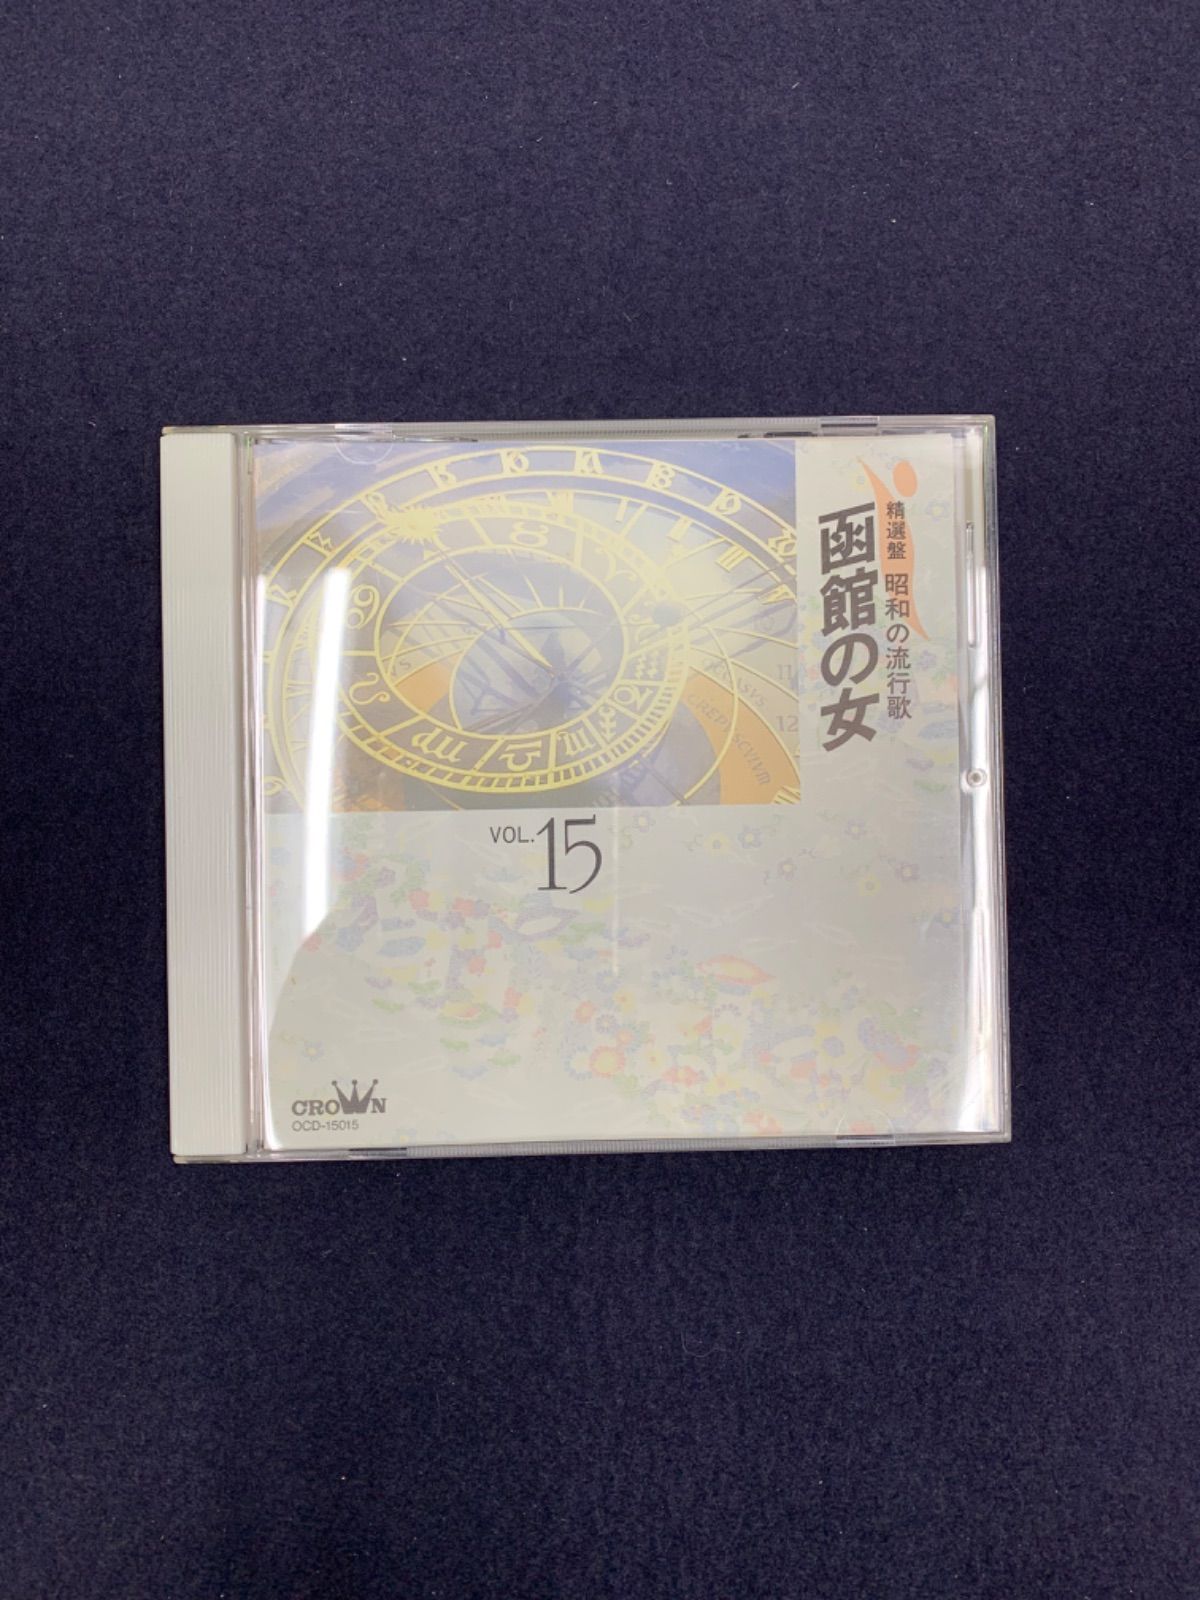 精選盤昭和の流行歌VOL.15 函館の女 CD - メルカリ